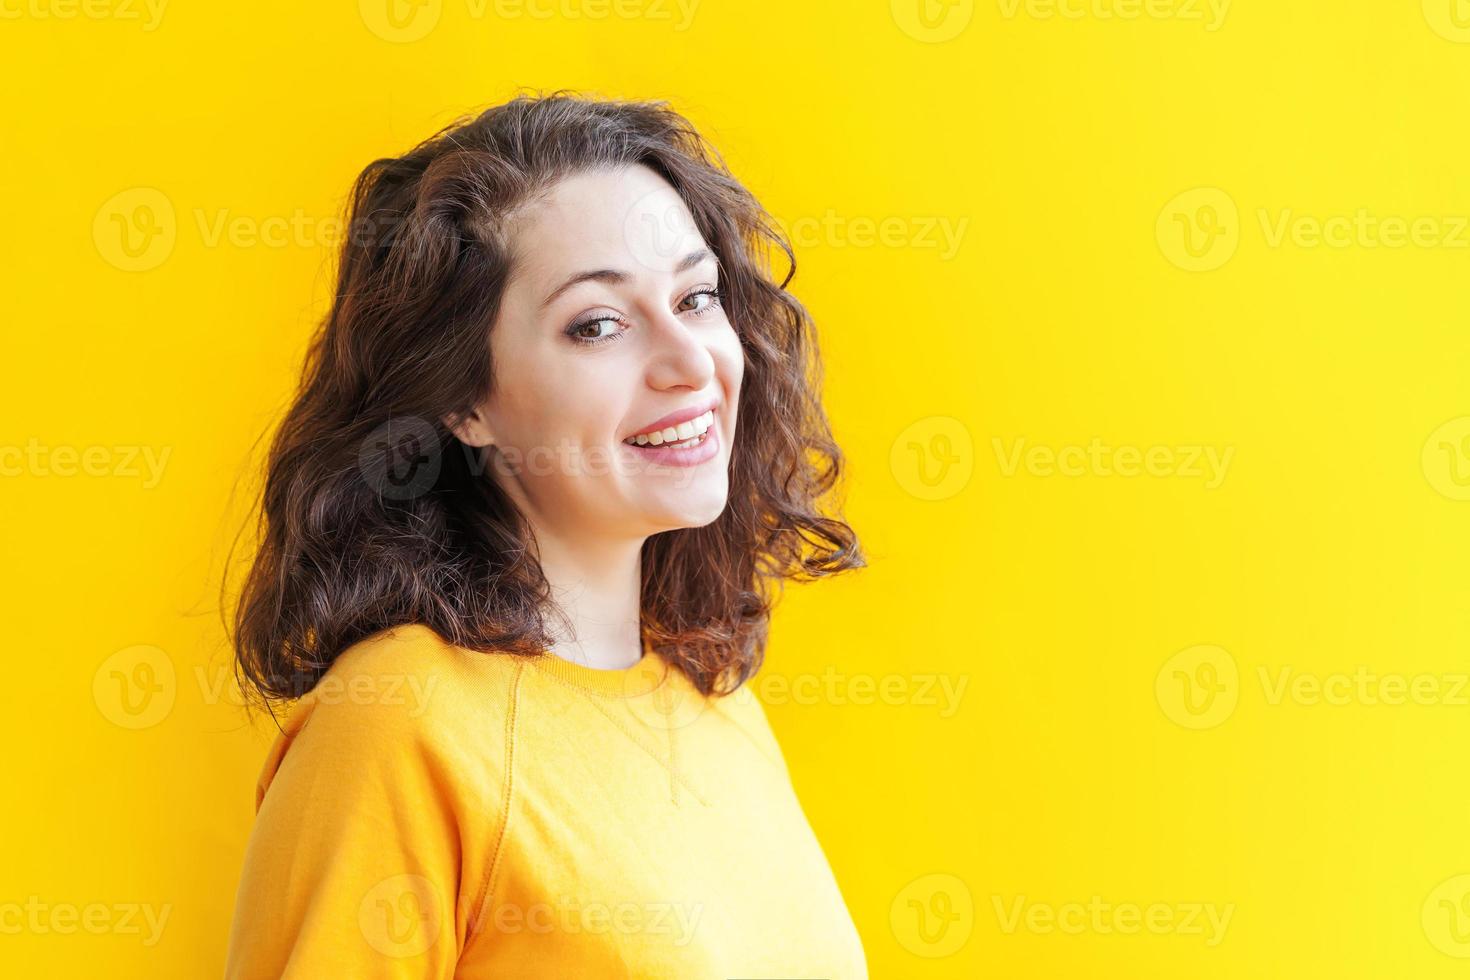 fille heureuse souriante. portrait de beauté jeune femme brune riante positive heureuse sur fond jaune isolé. femme européenne. émotion humaine positive expression faciale langage corporel photo